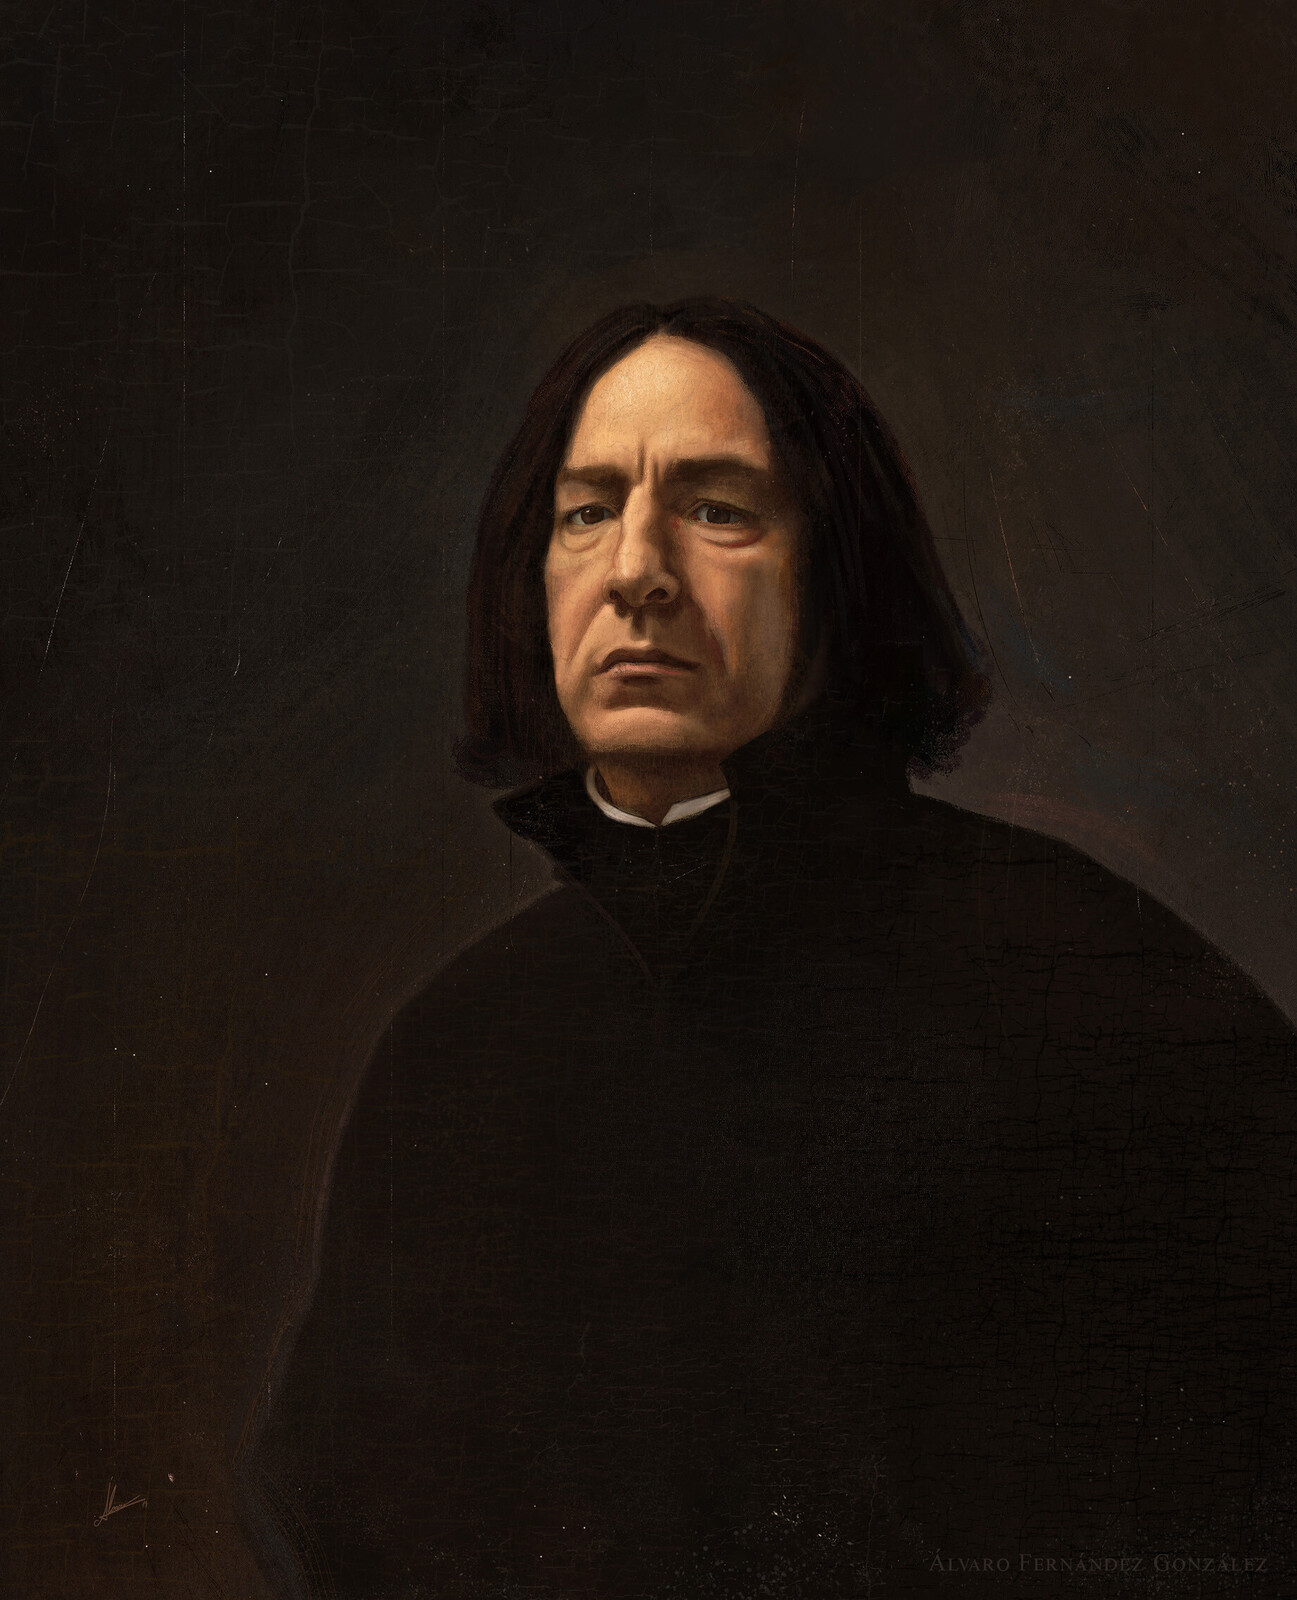 Álvaro Fernández González - Severus Snape